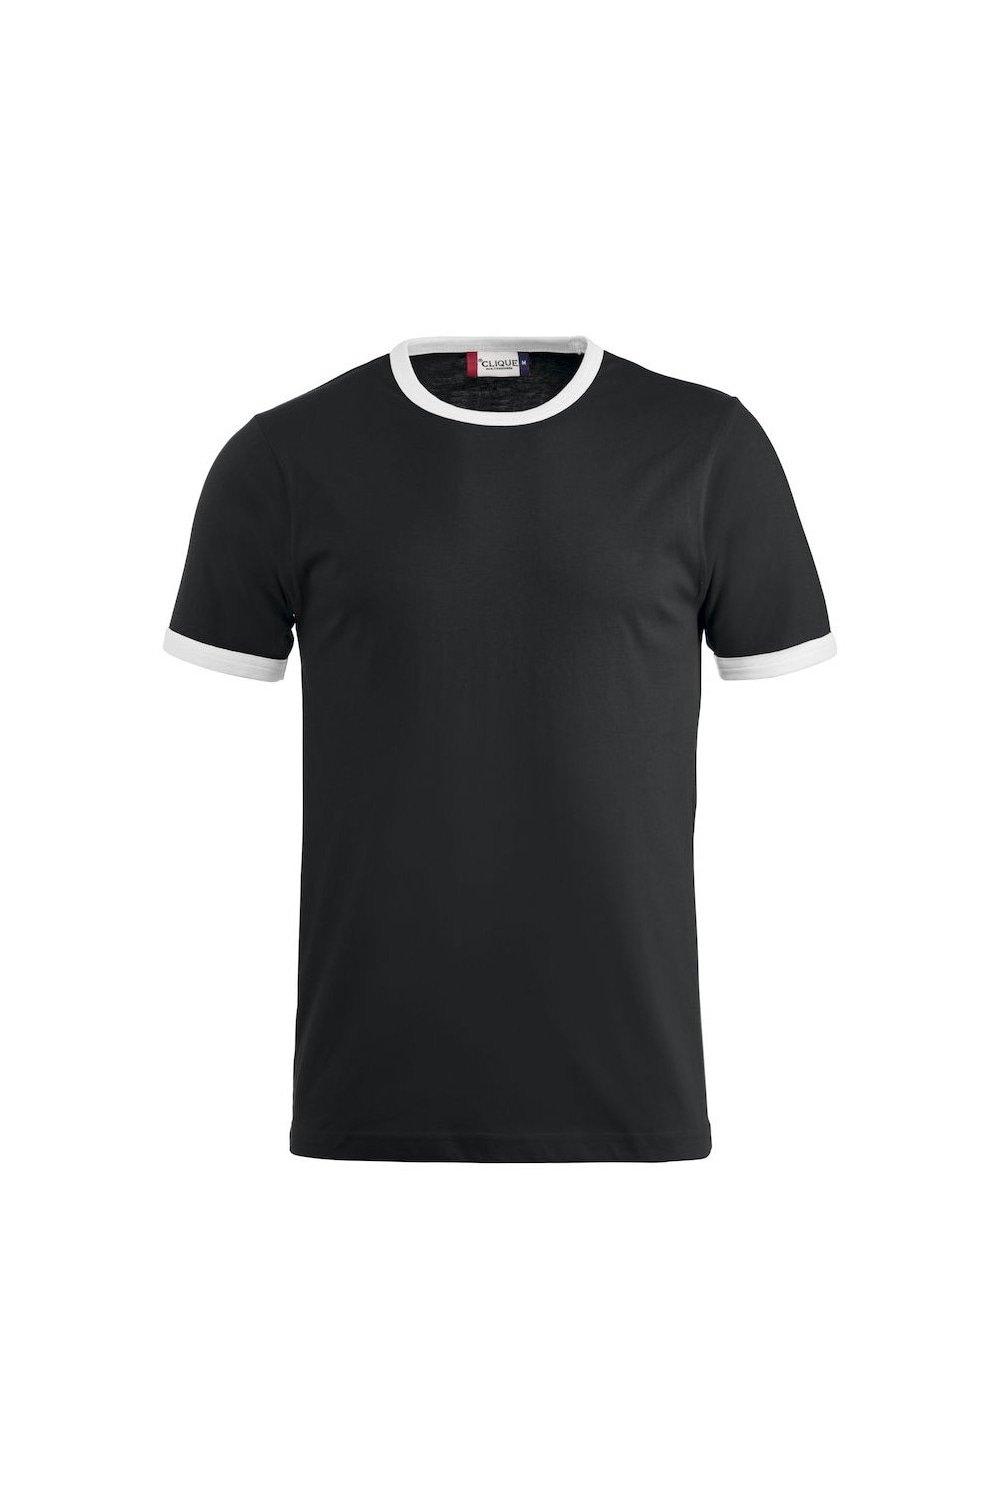 Имя Футболка Clique, черный футболка clique с надписью 42 размер